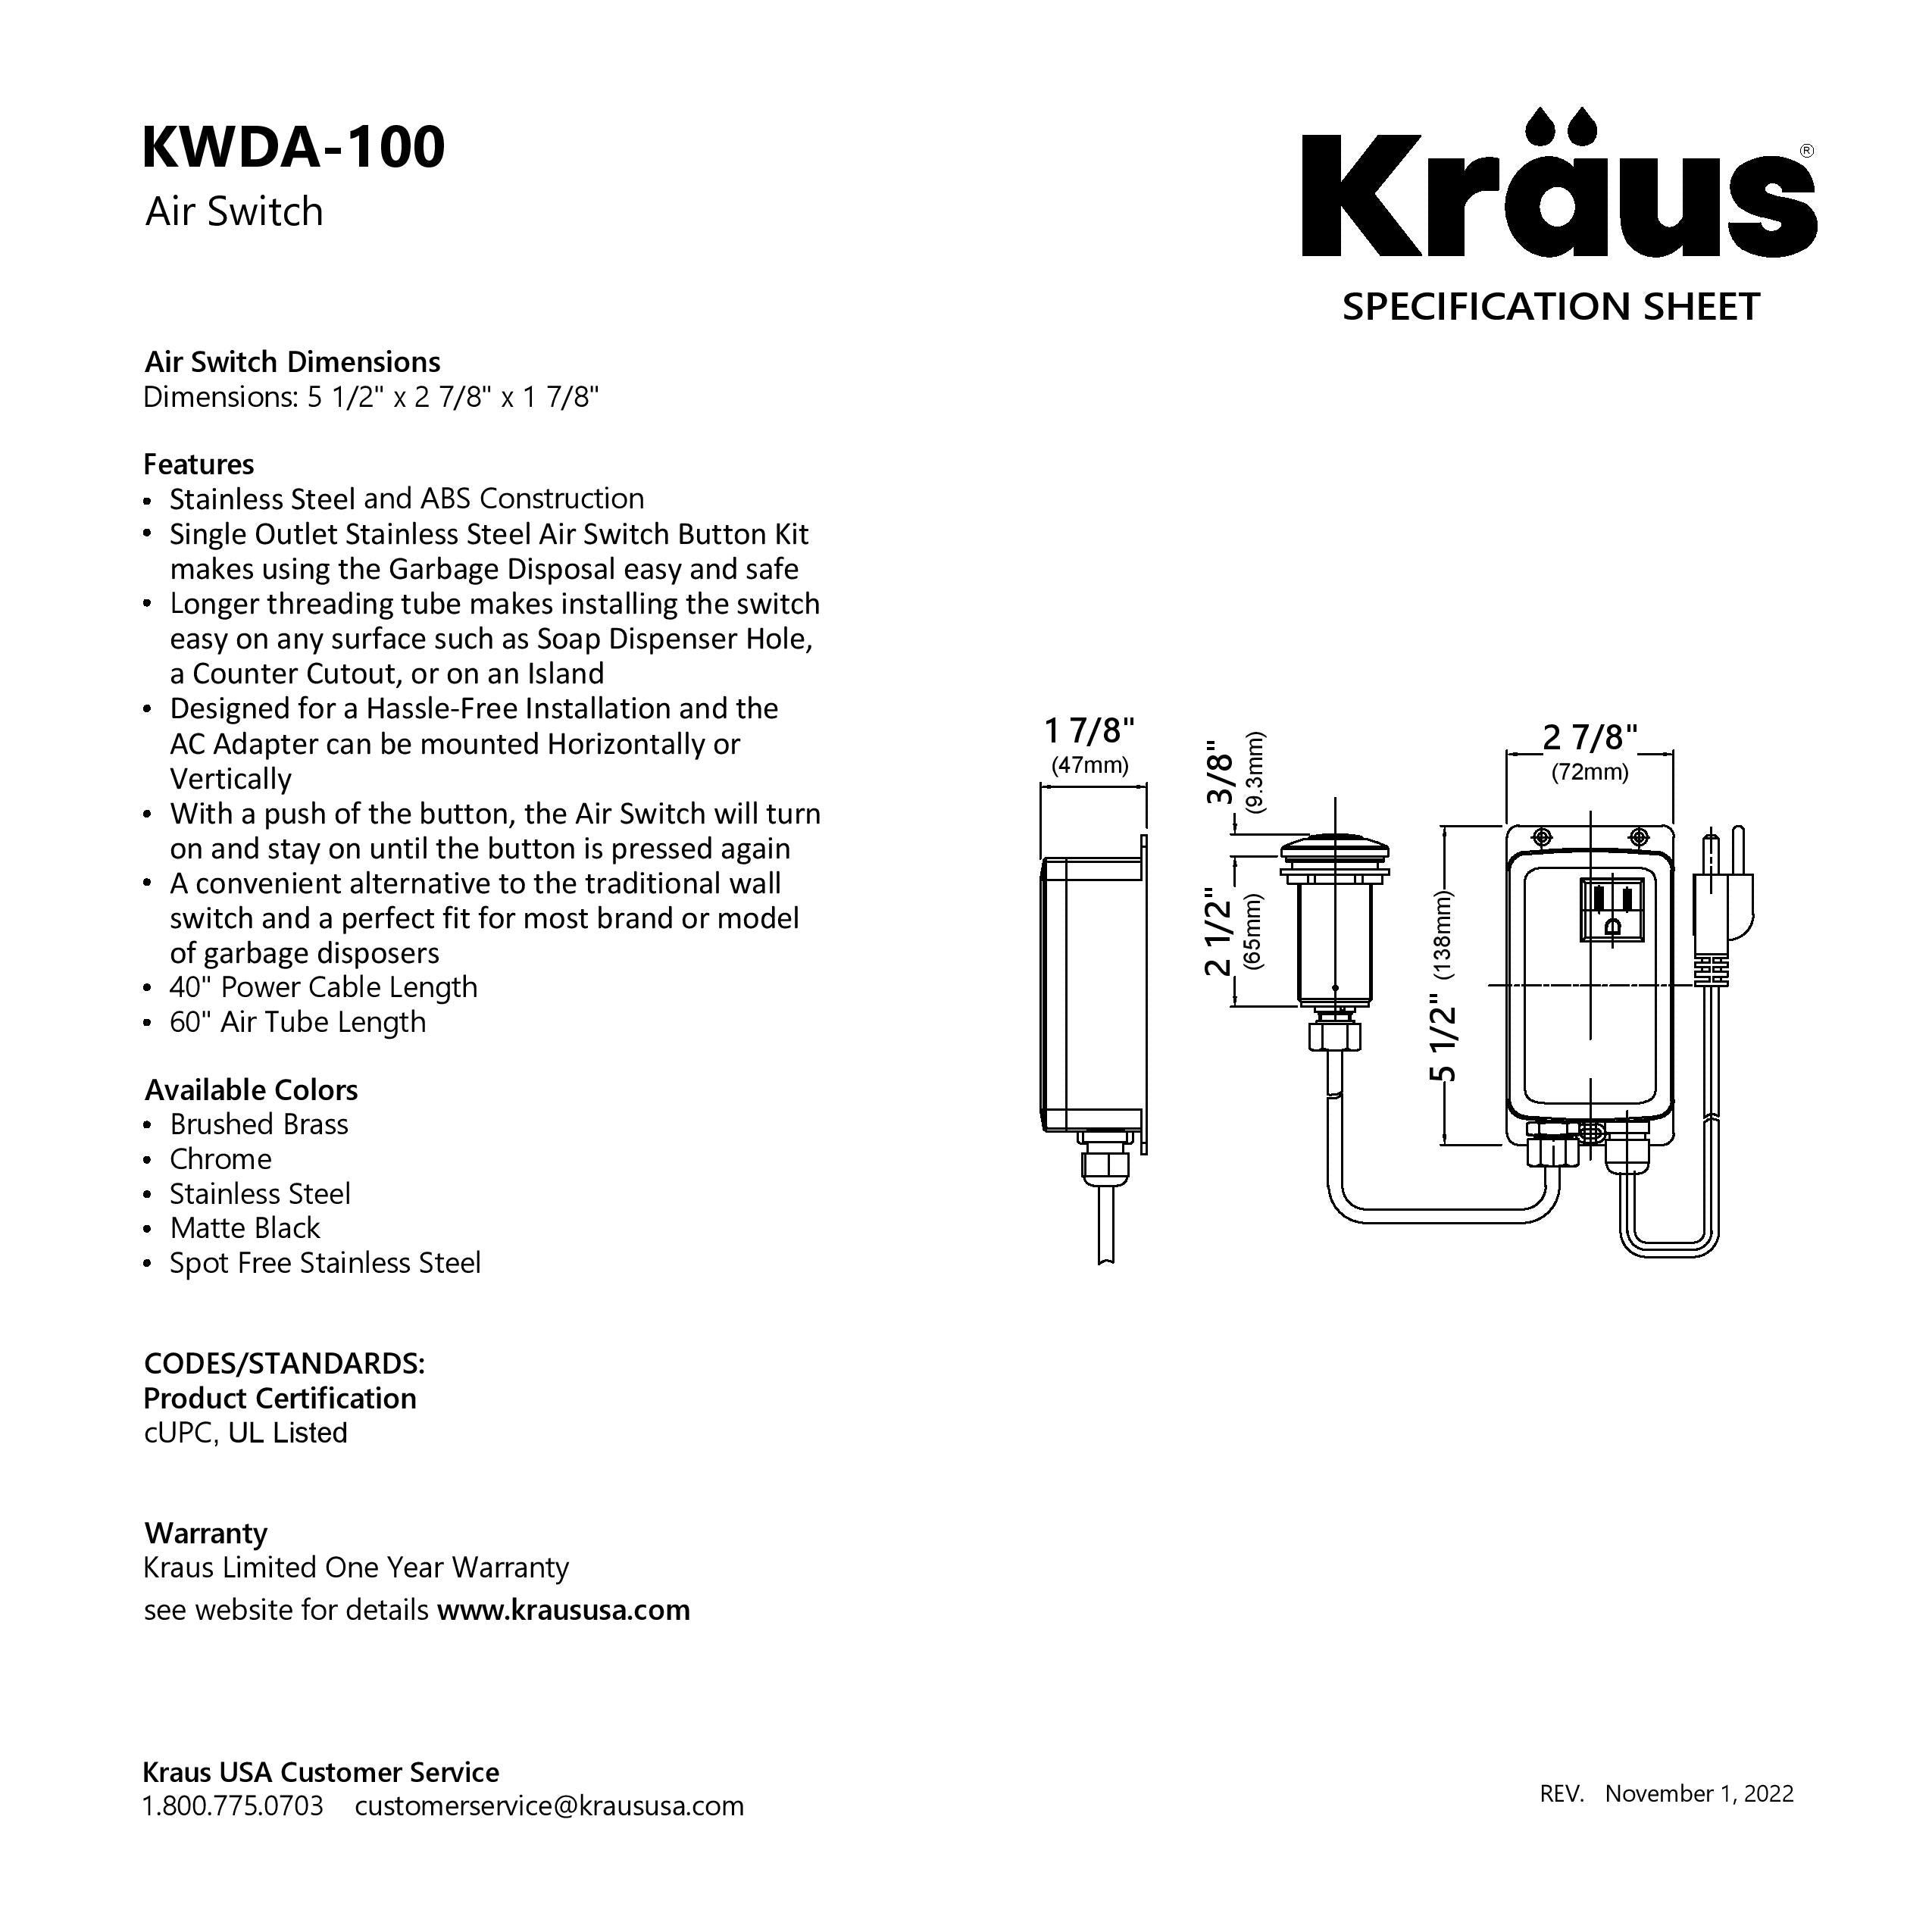 KRAUS Garbage Disposal Push Button Air Switch Kit in Matte Black